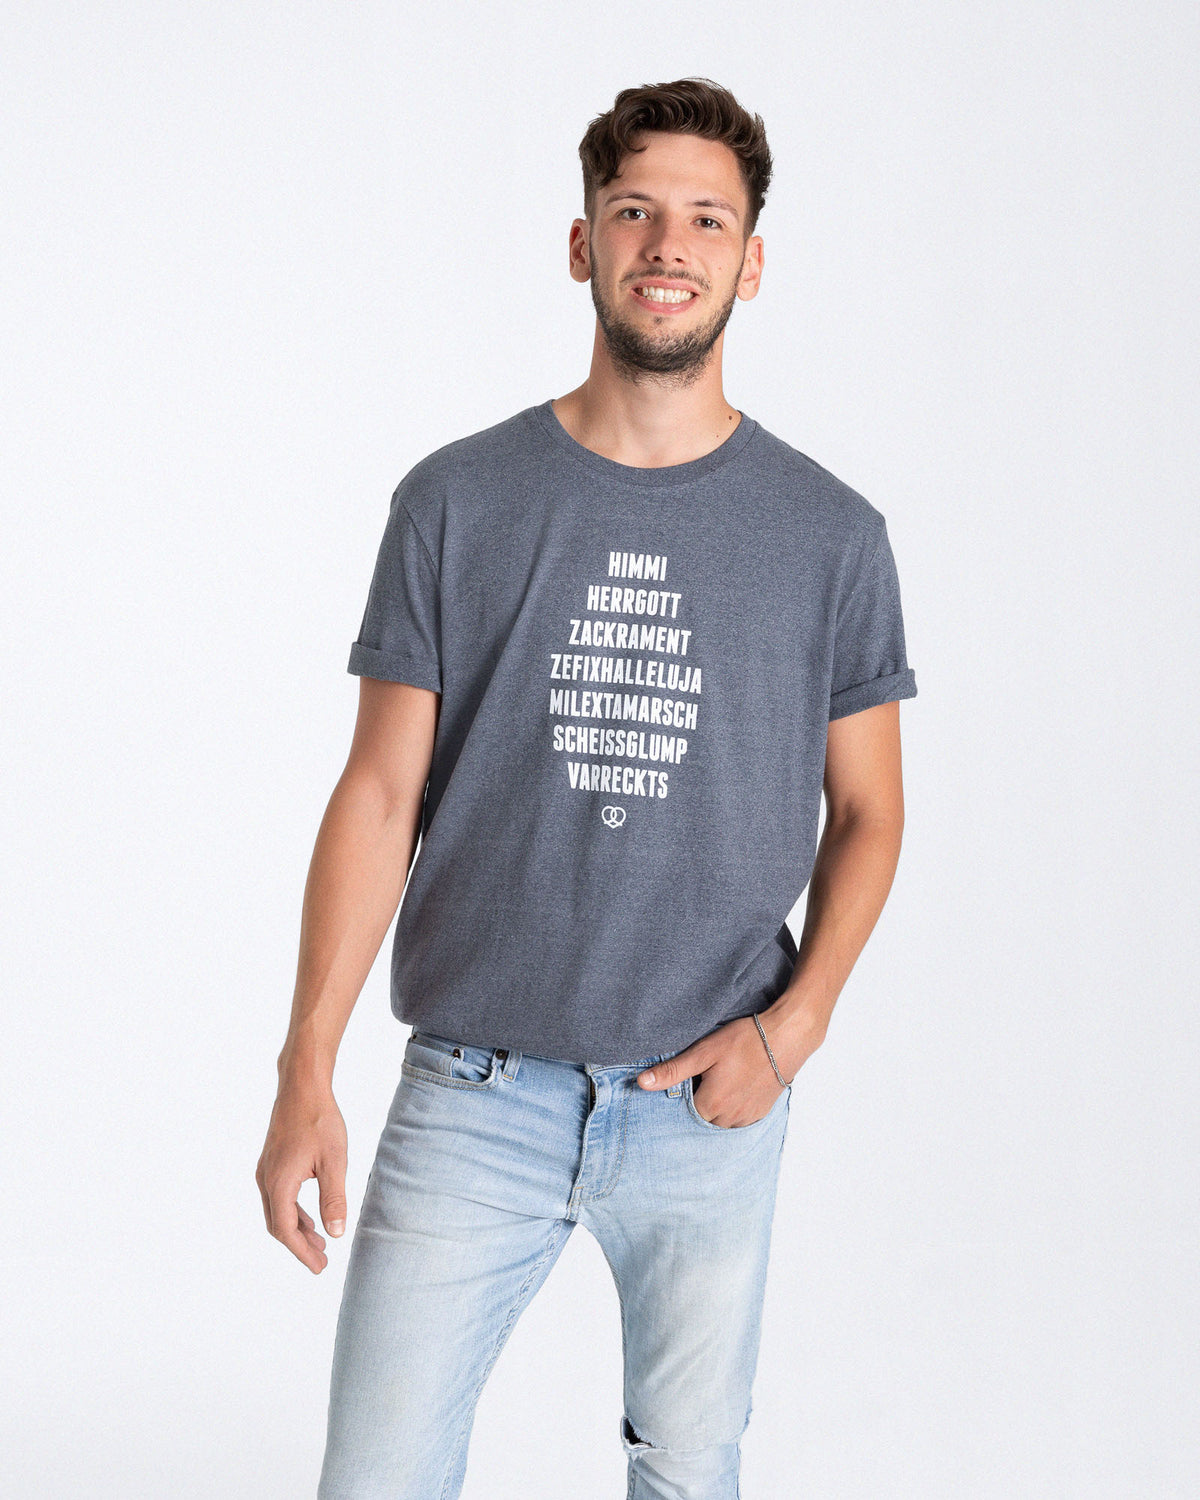 Ein männliches Model trägt ein Vintage blaues T-Shirt mit einem Print auf der Vorderseite der aus einem weißem "HIMMI HERRGOTT ZACKRAMENT ZEFIXHALLELUJA MILEXTAMARSCH SCHEISSGLUMP VARRECKTS" Schriftzug und einem weißem Breznherz besteht.